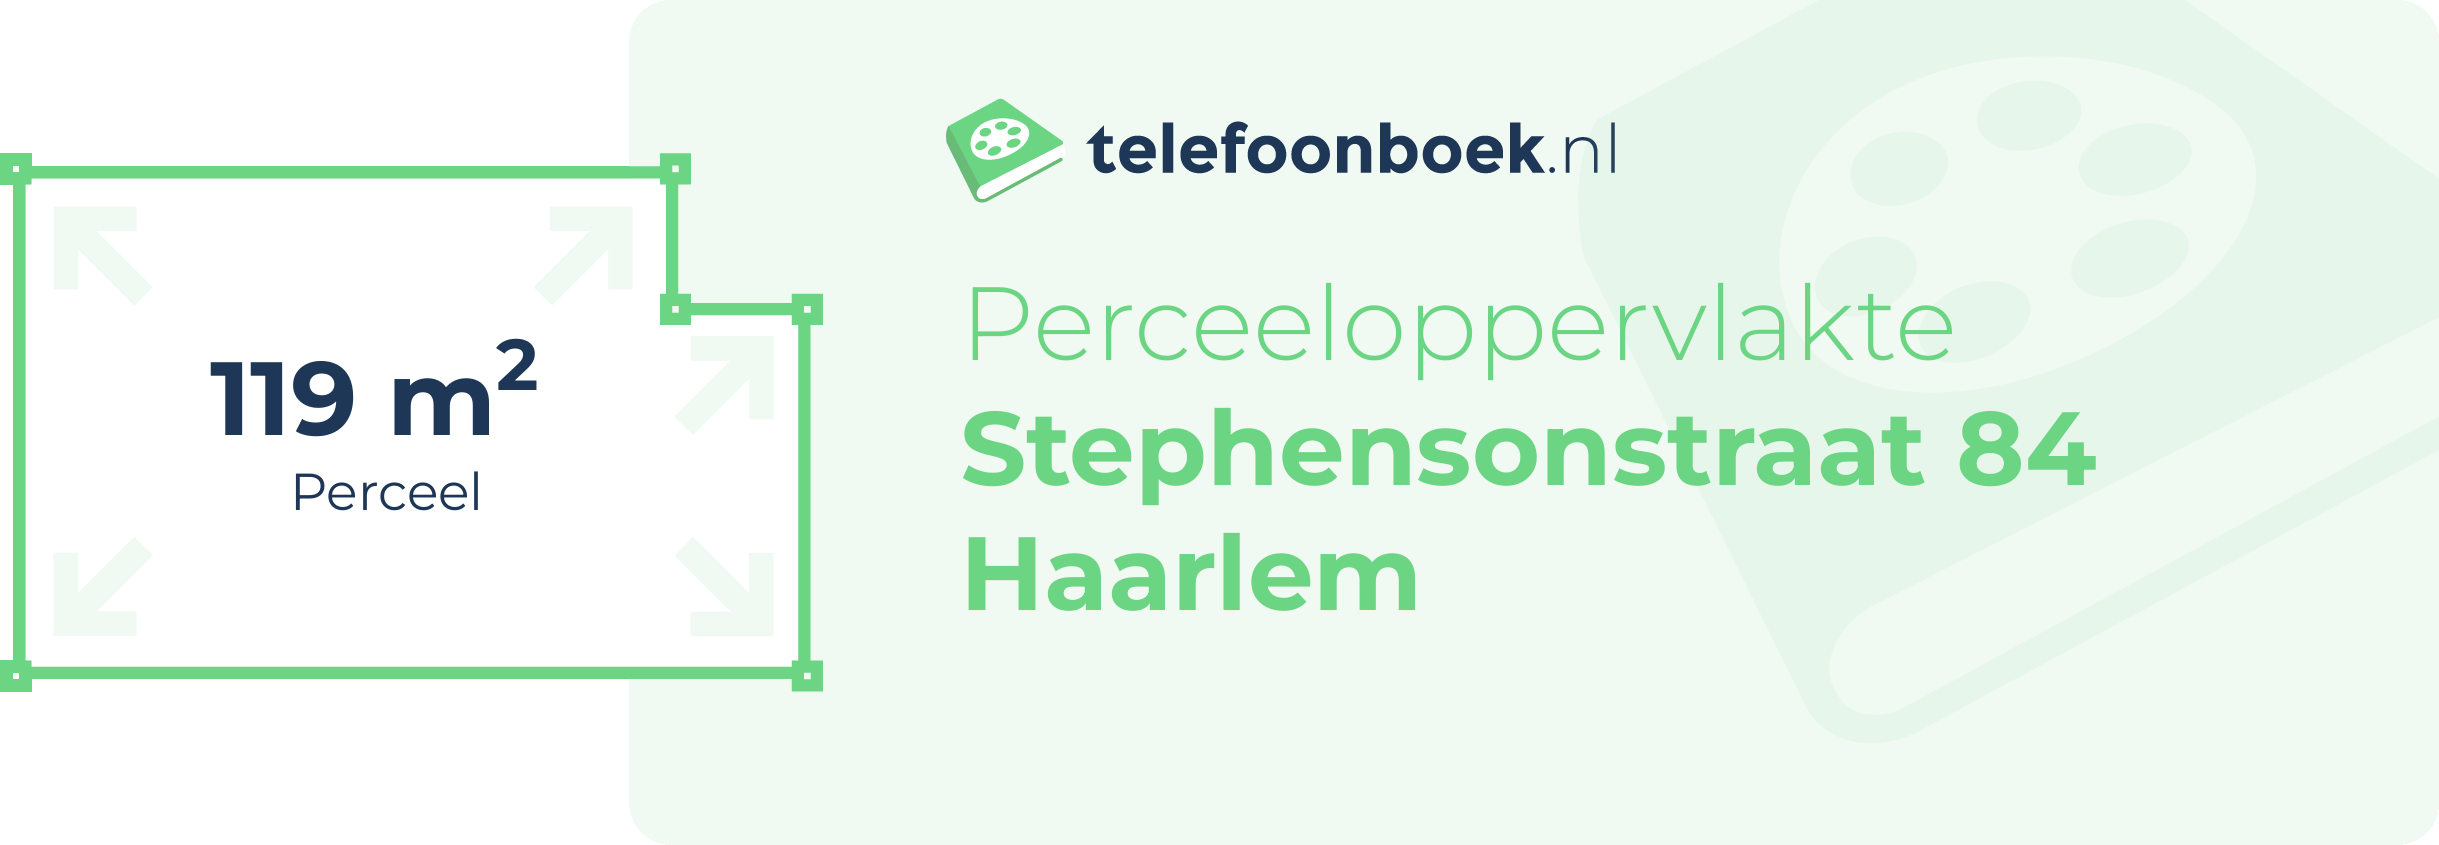 Perceeloppervlakte Stephensonstraat 84 Haarlem